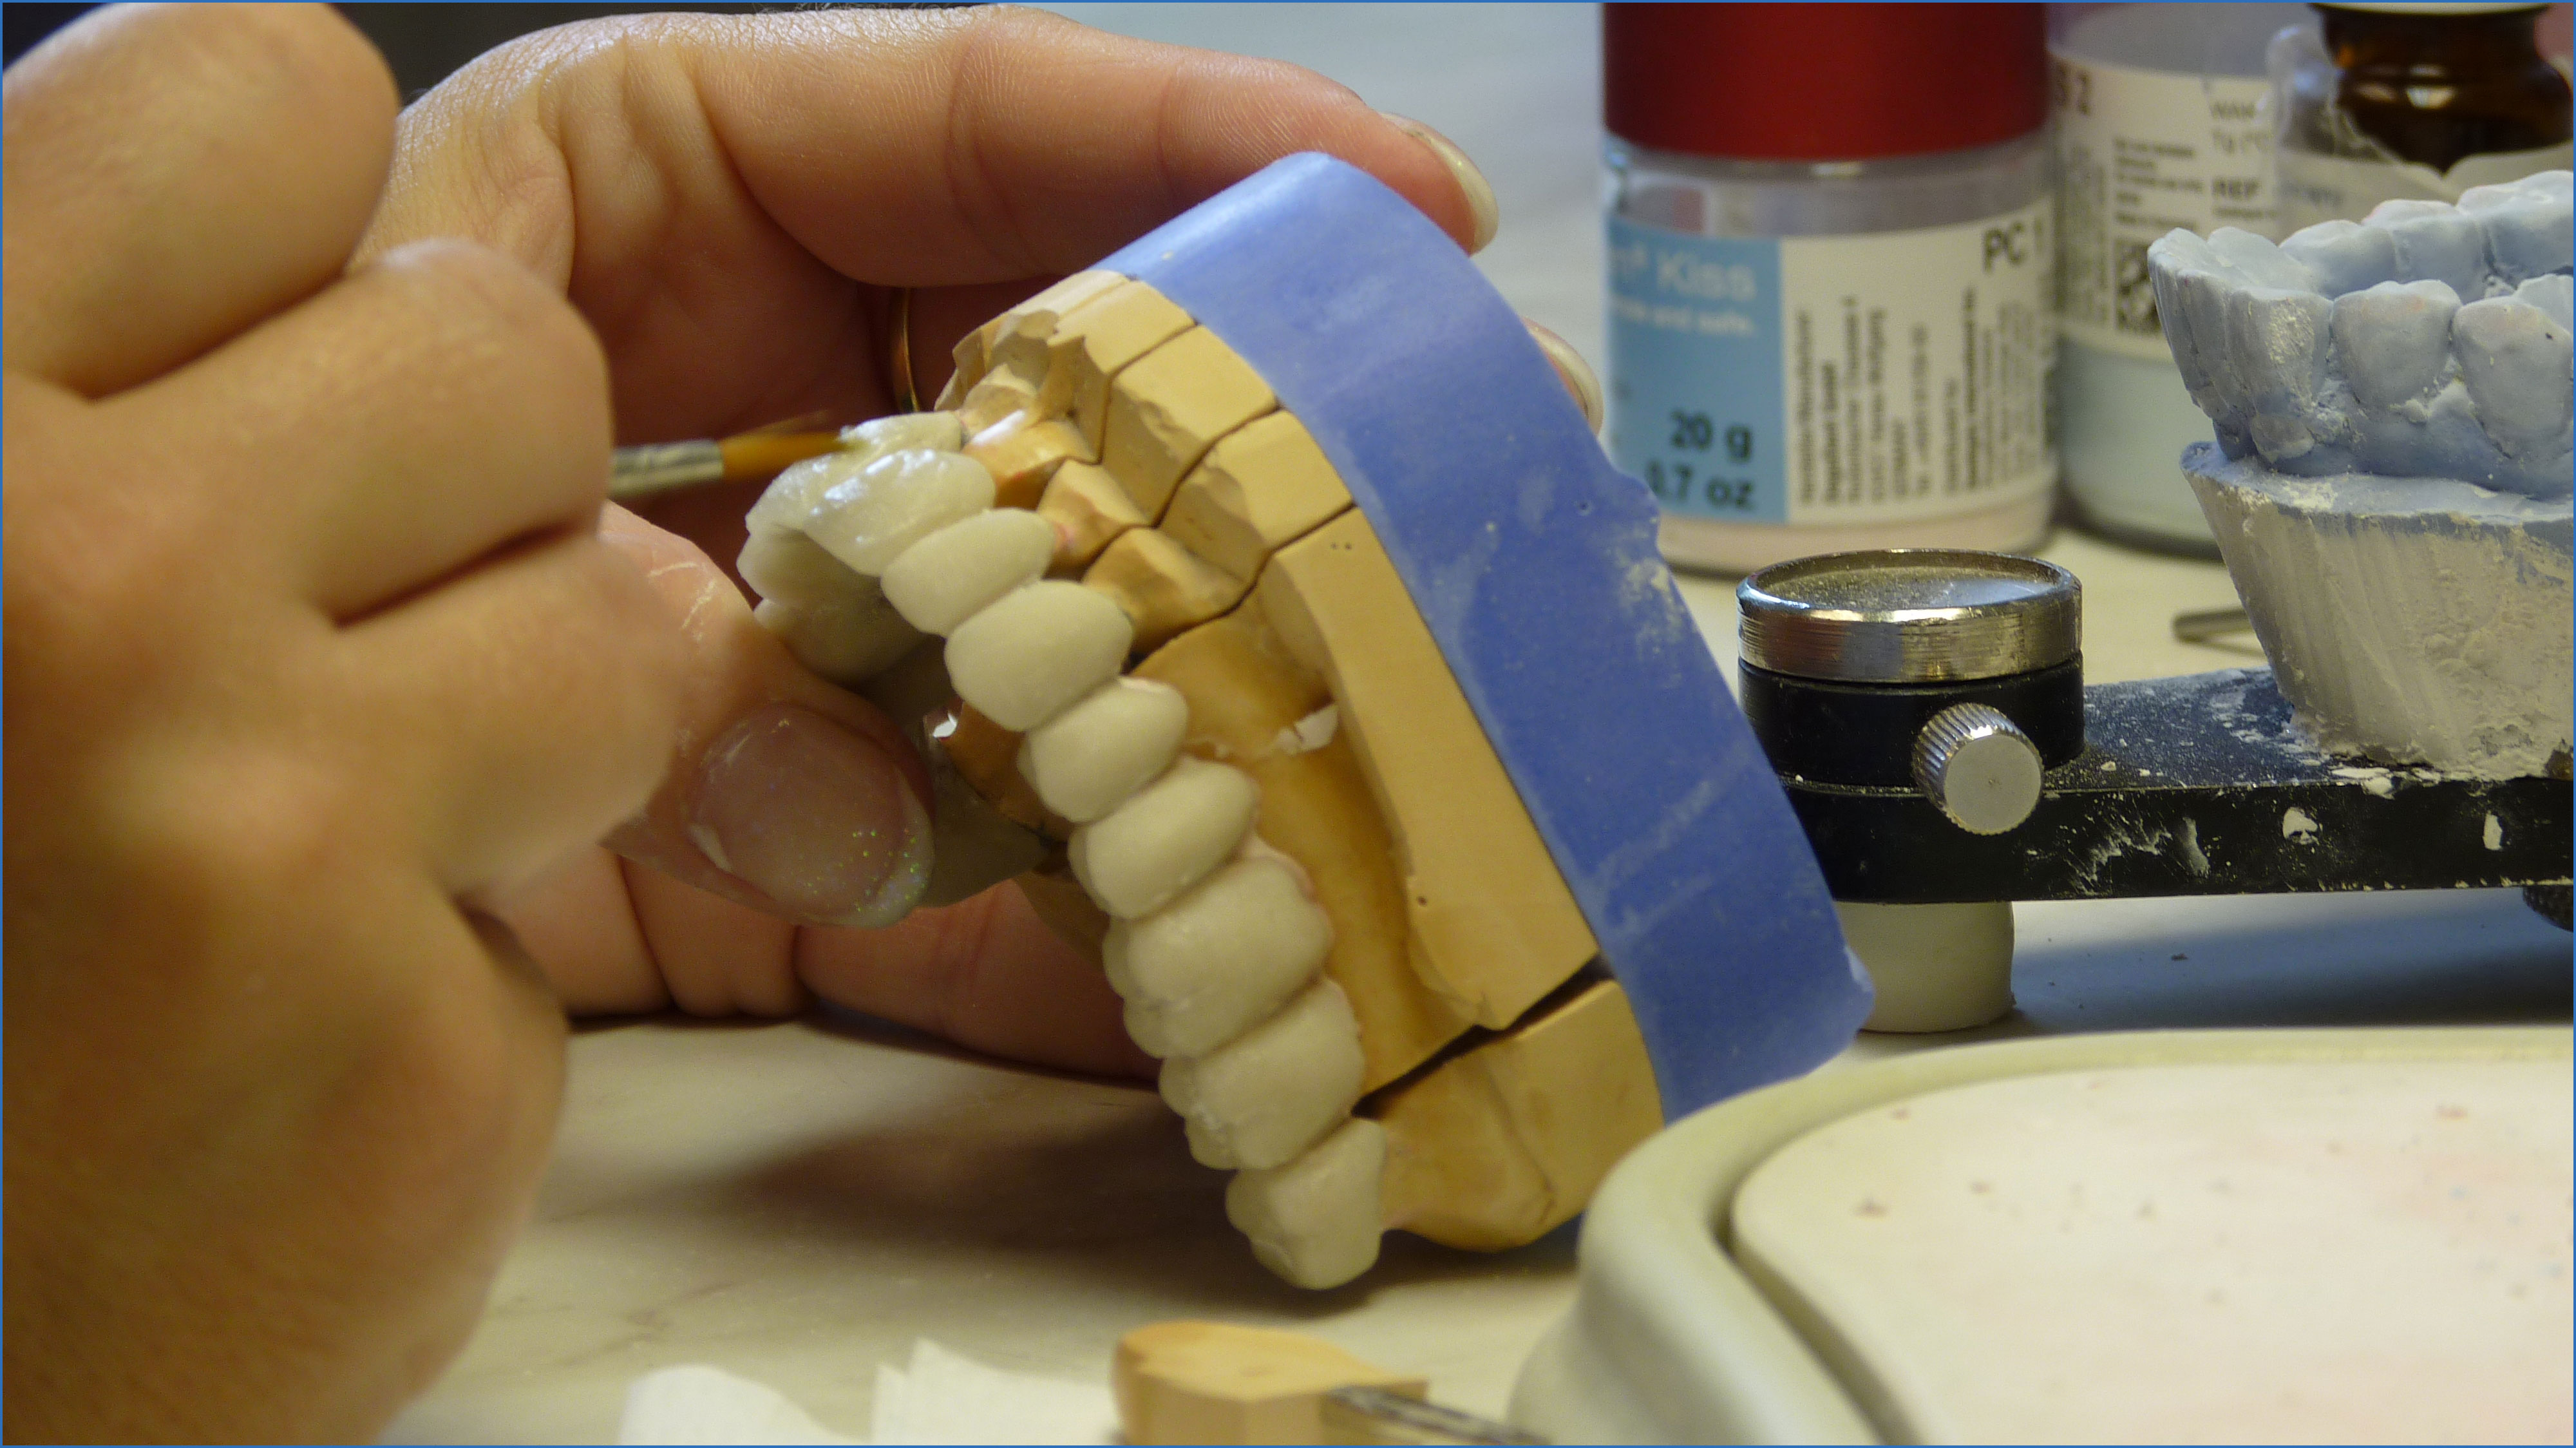 Изготовление металлокерамического протеза. Лабораторные этапы мостовидного протеза. Восковое моделирование мостовидного протеза. Пластмасса для мостовидного протеза. Керамический мостовидный протез.